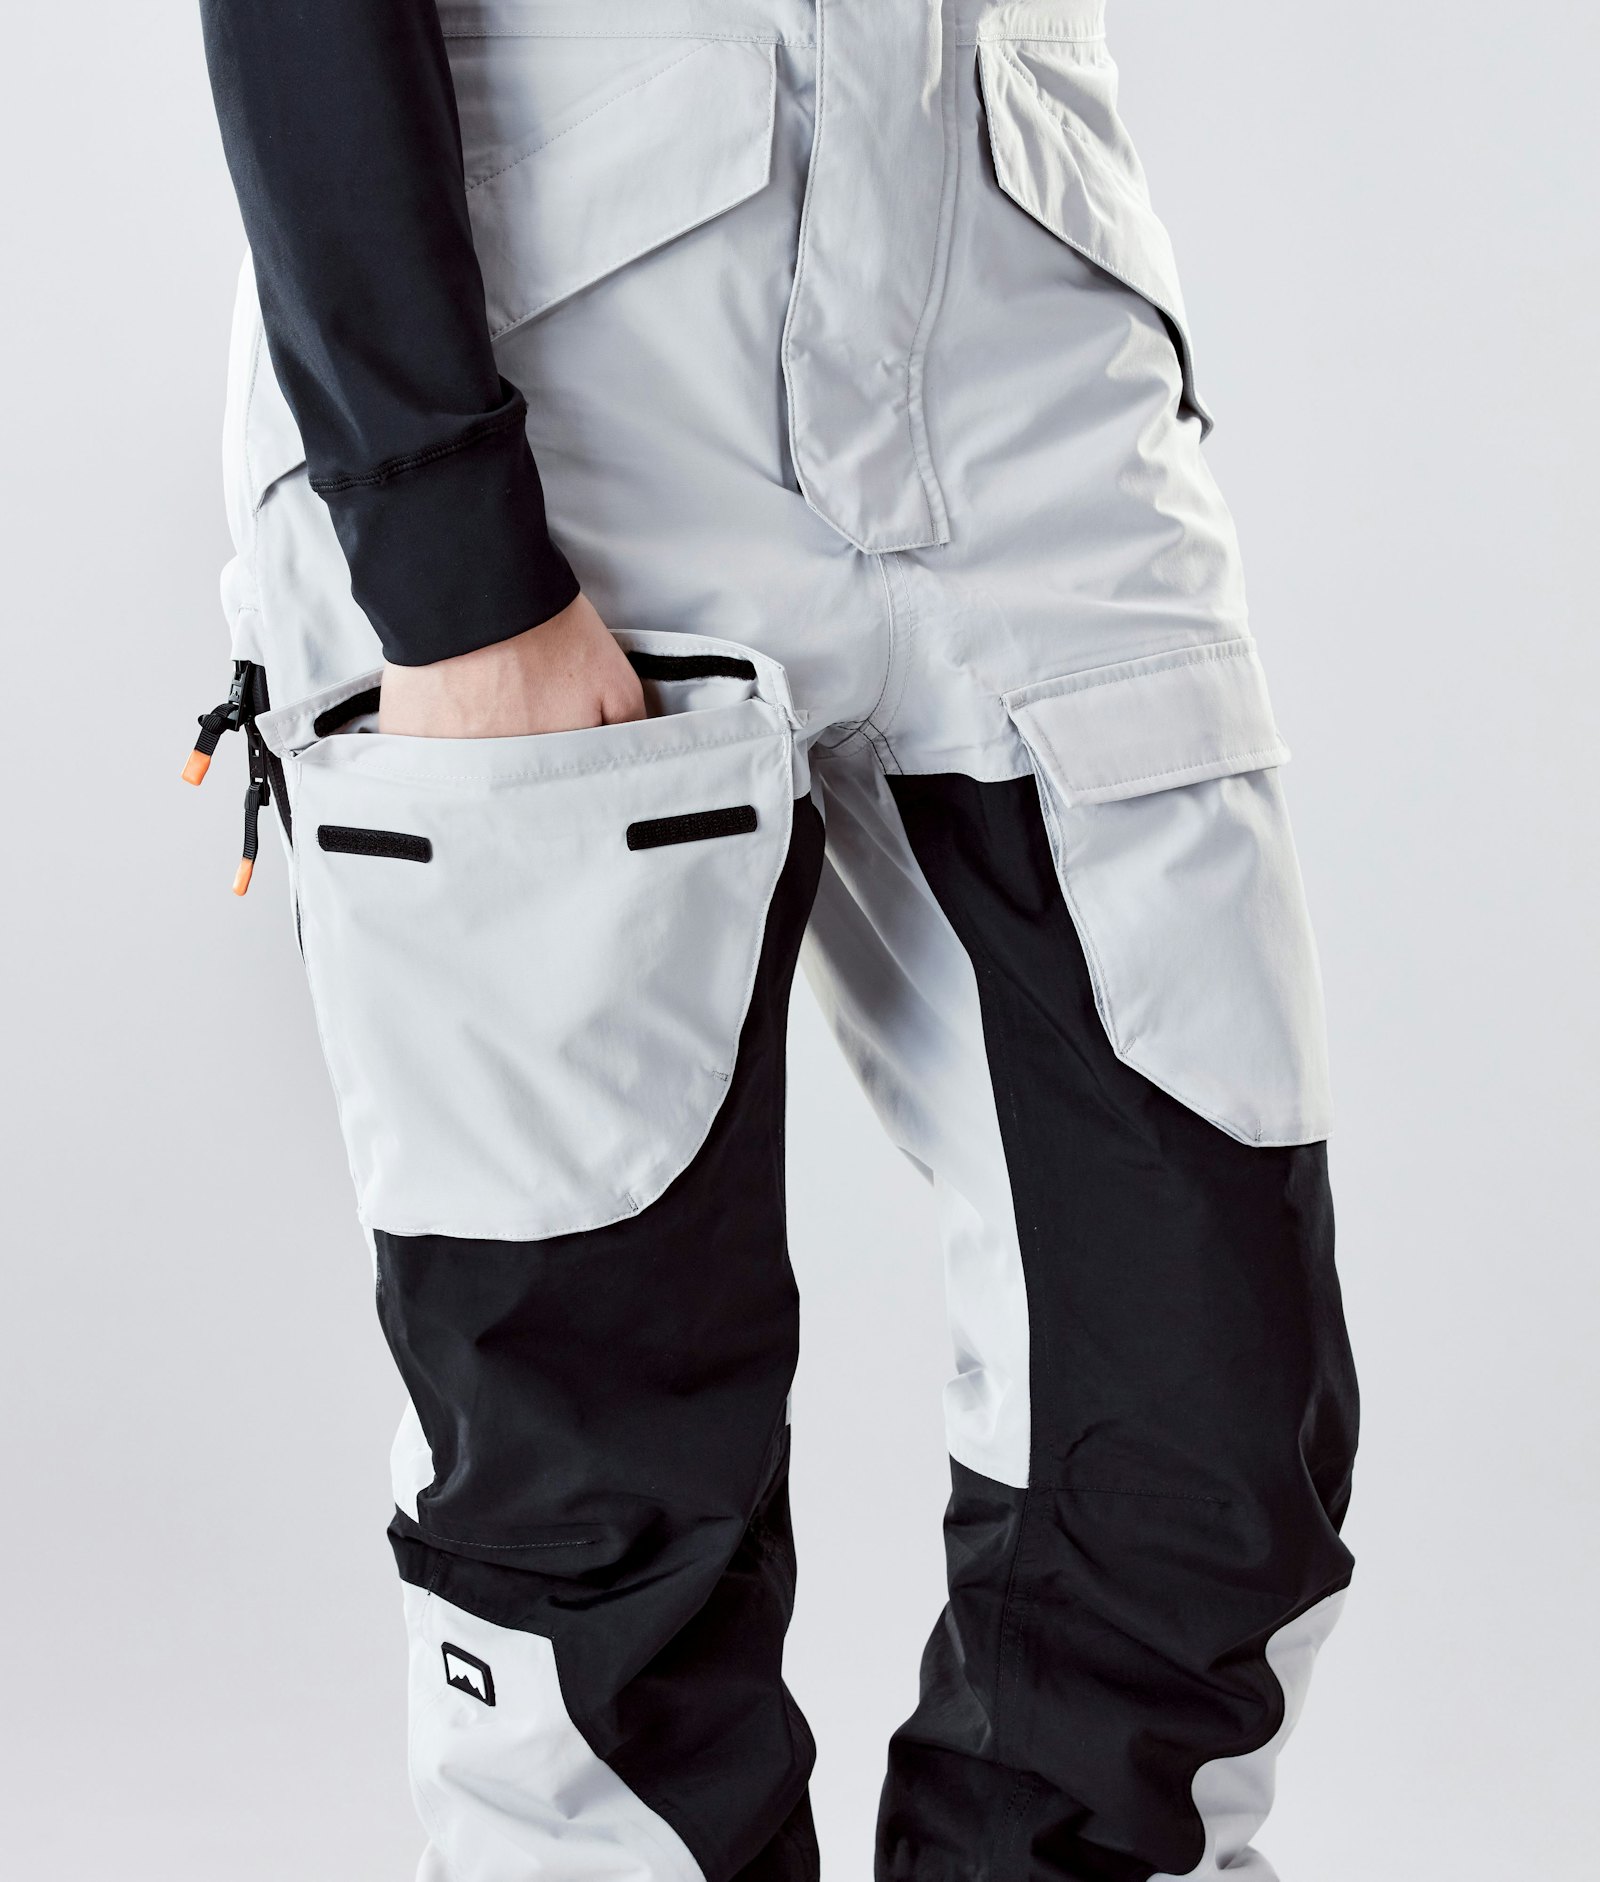 Fawk W 2020 Snowboard Pants Women Light Grey/Black